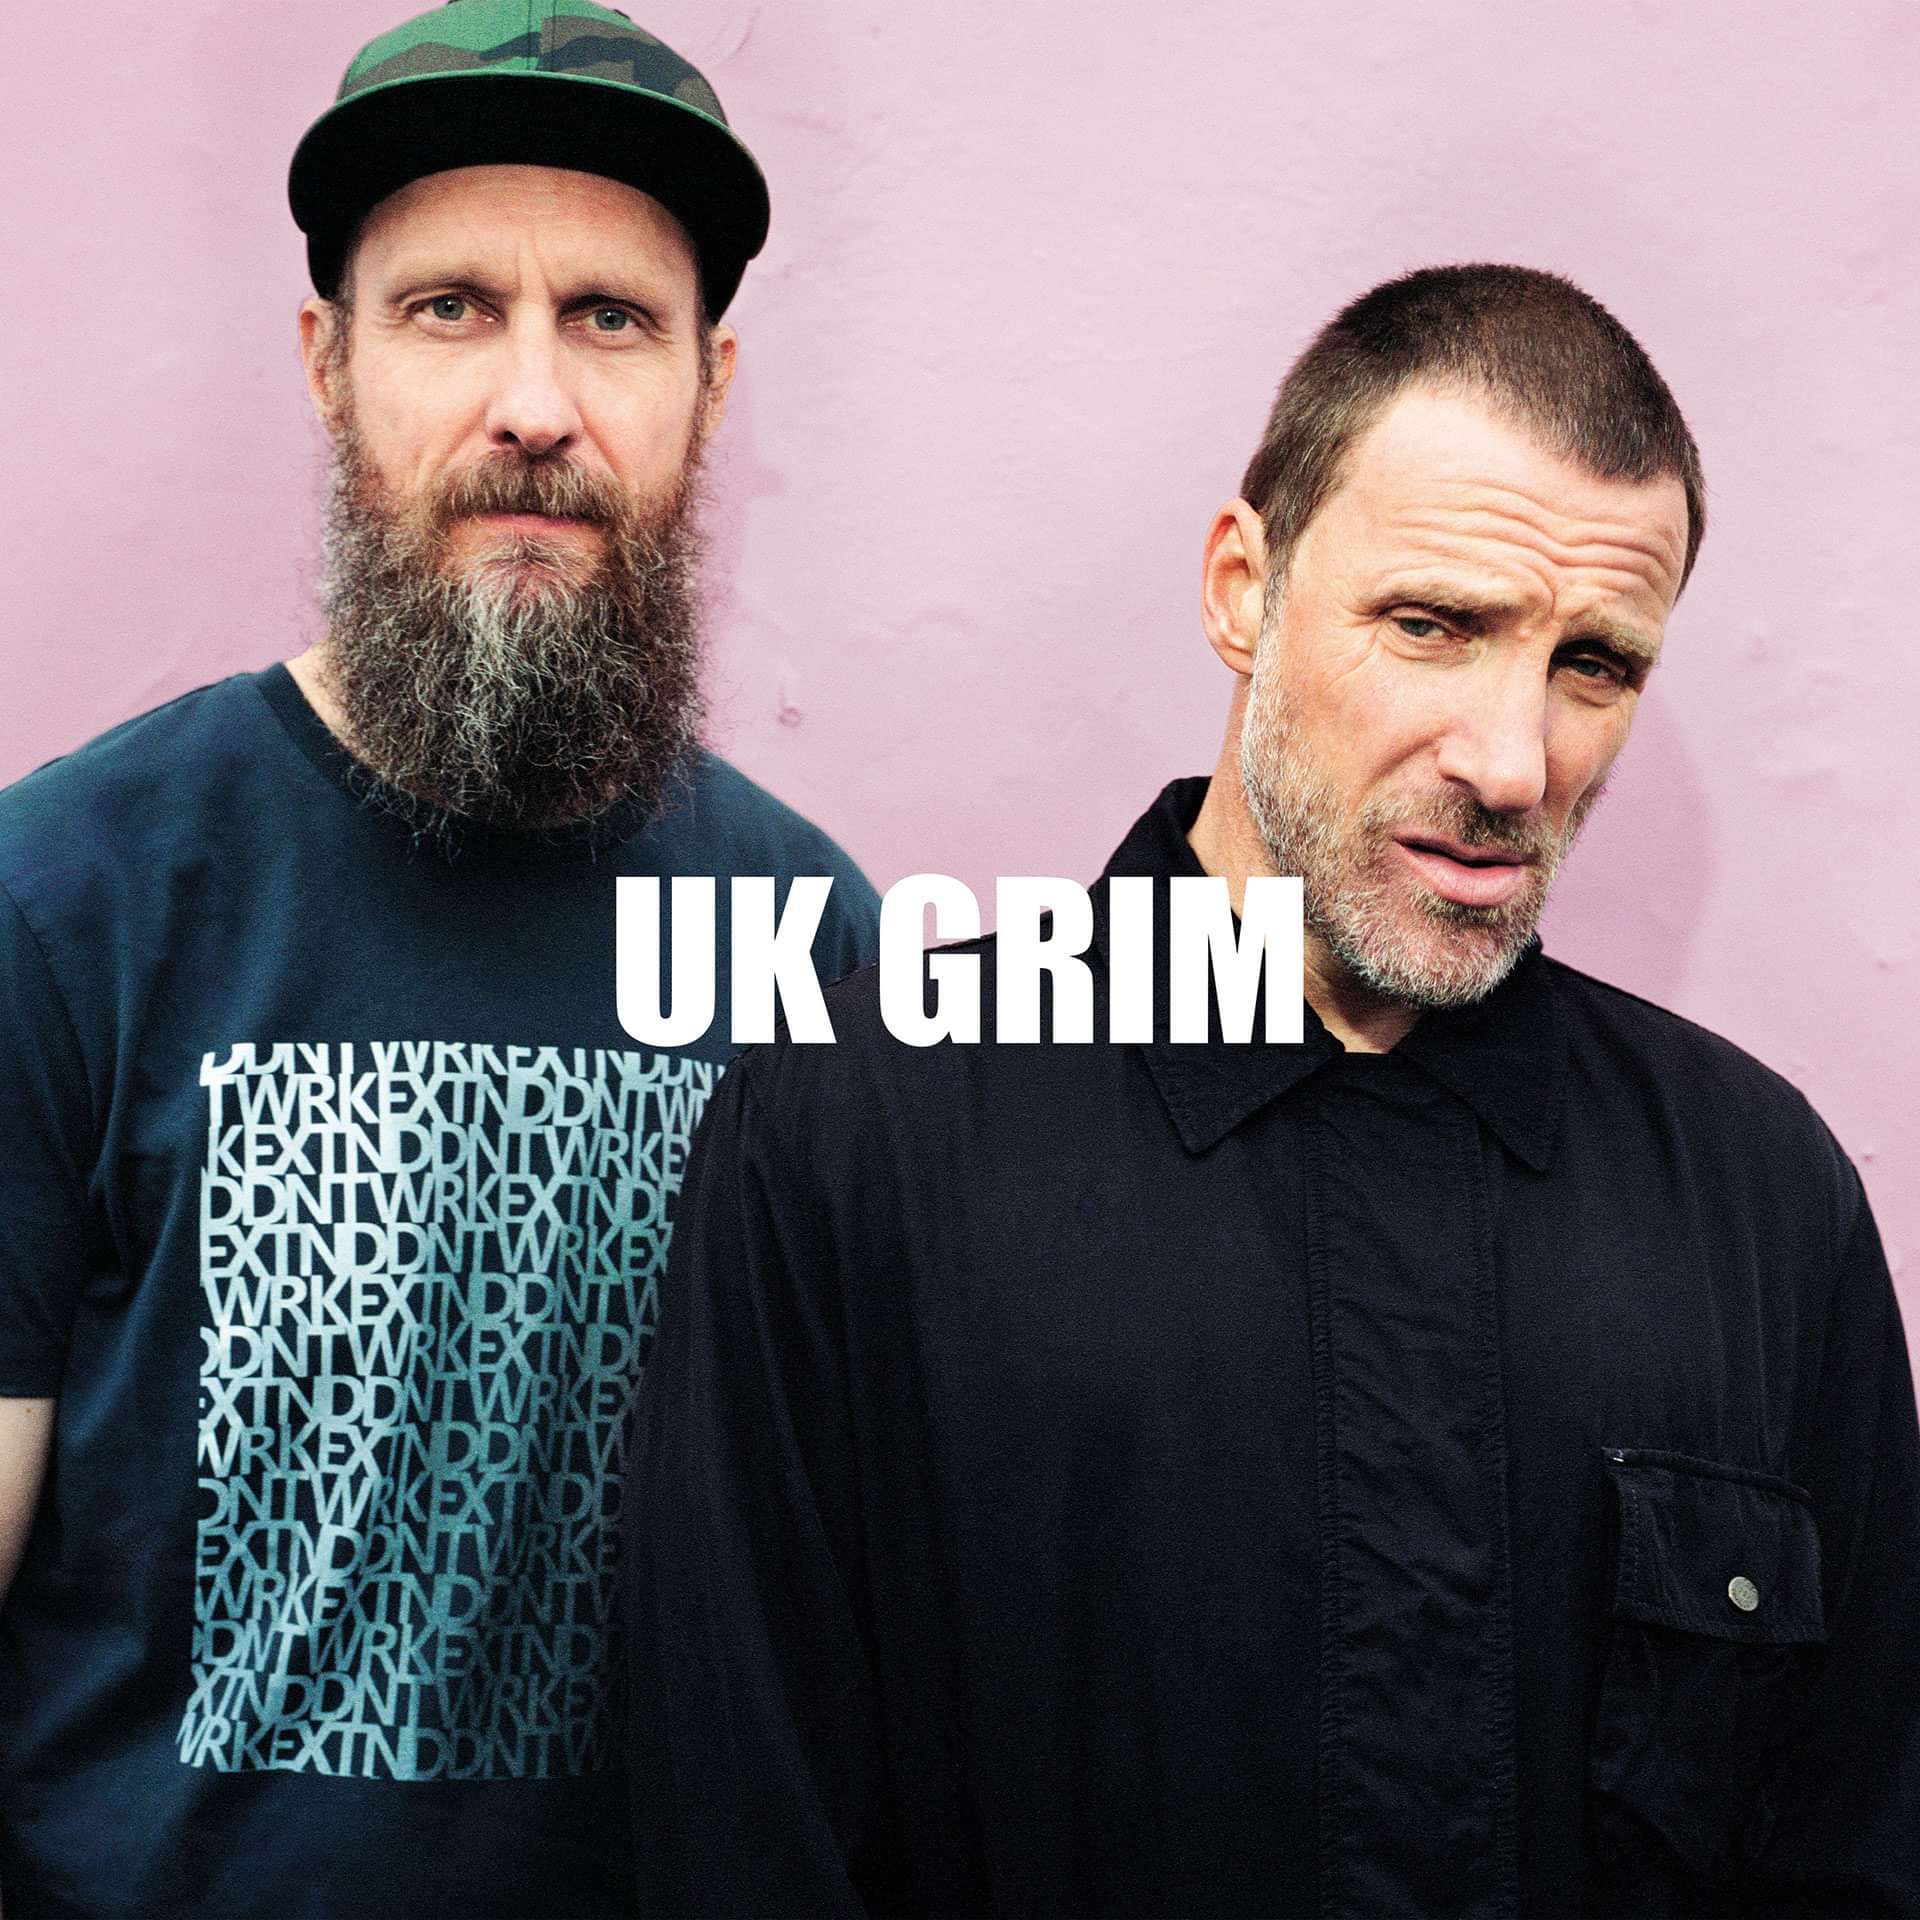 Sleaford Mods - UK GRIM - Album cover